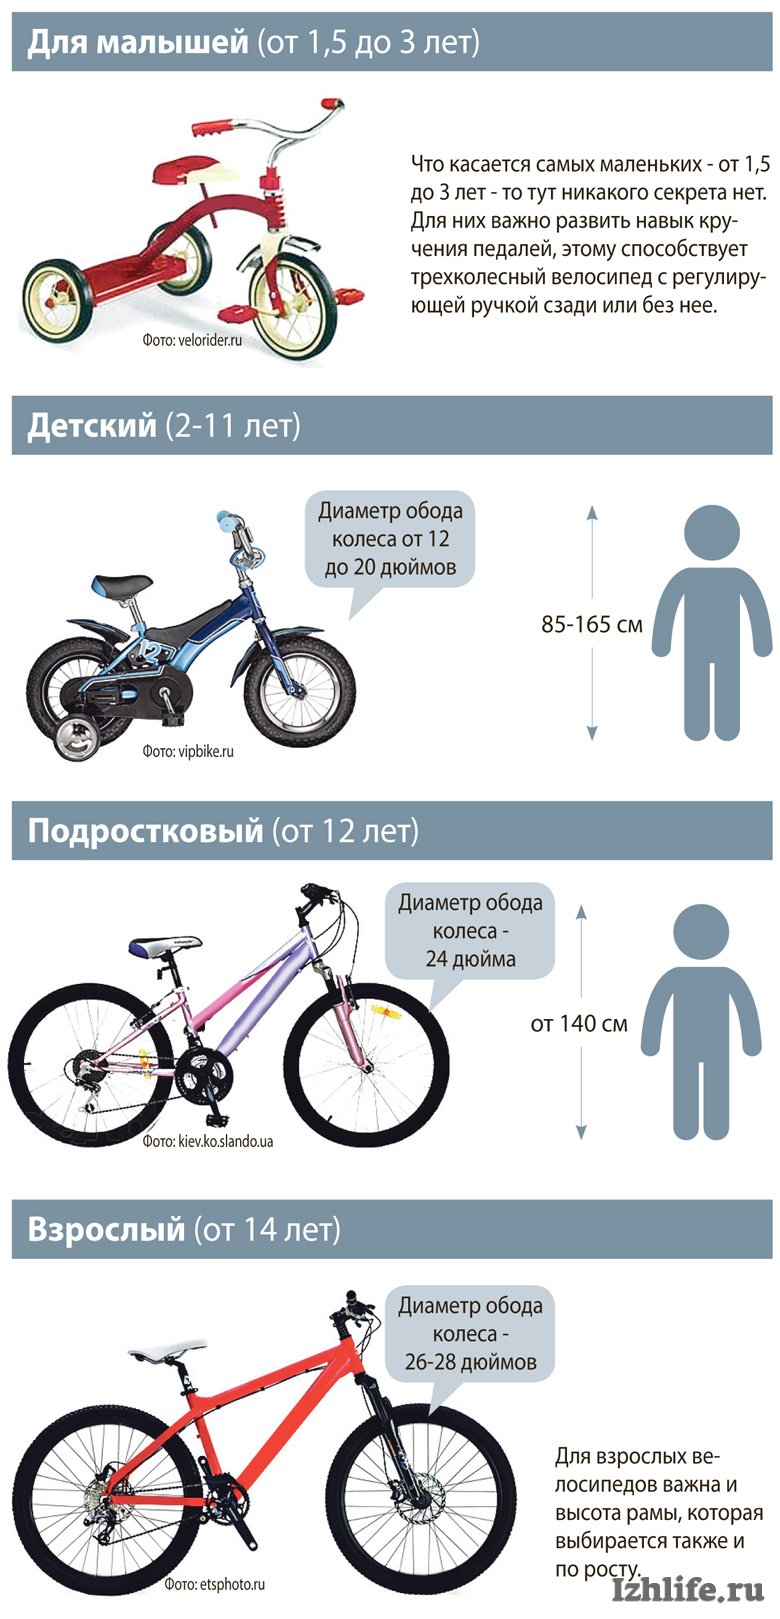 Какой вес выдерживает велосипед. Размер колес детского велосипеда по росту. Как выбрать велосипед для ребенка 4 года по росту и весу таблица. Таблица подбора велосипеда по росту ребенка рамы. Как выбрать раму для велосипеда по росту таблица.